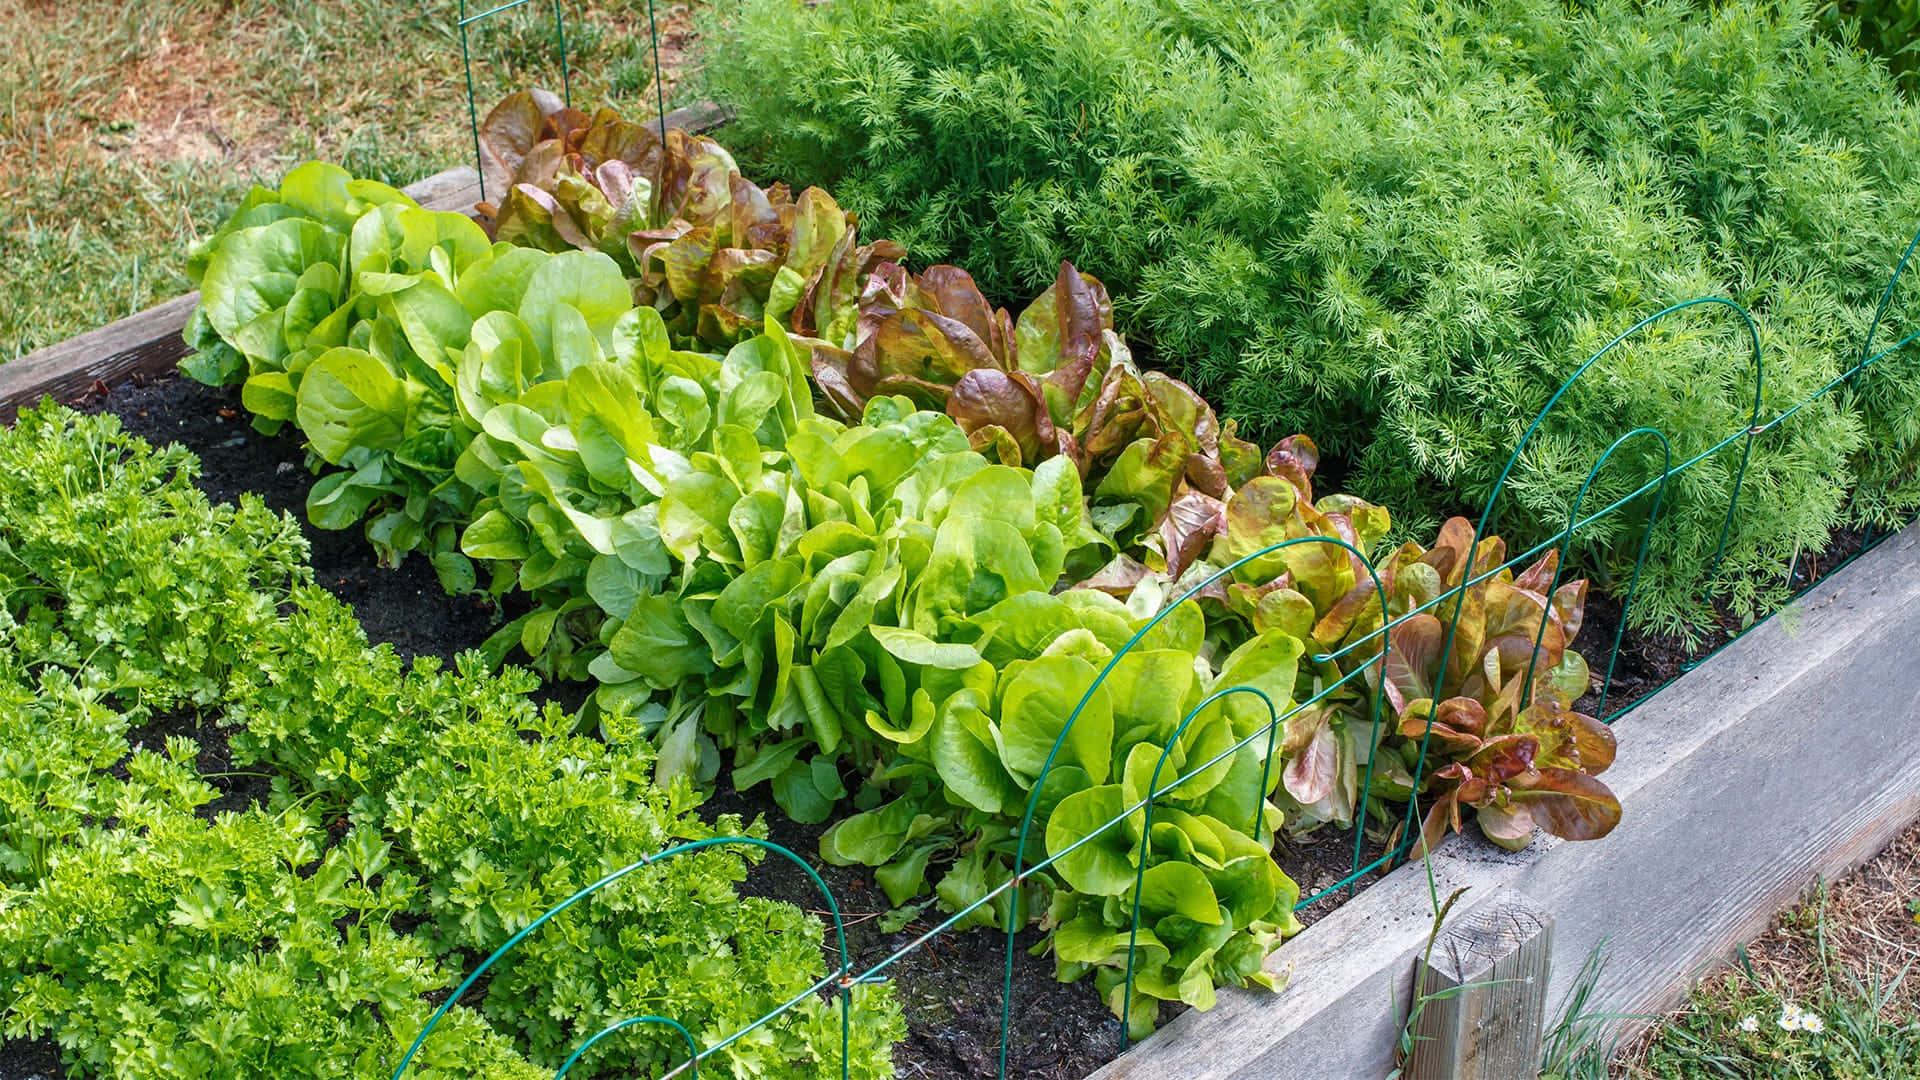 Caption: Vibrant Green Plant in its Natural Habitat Wallpaper